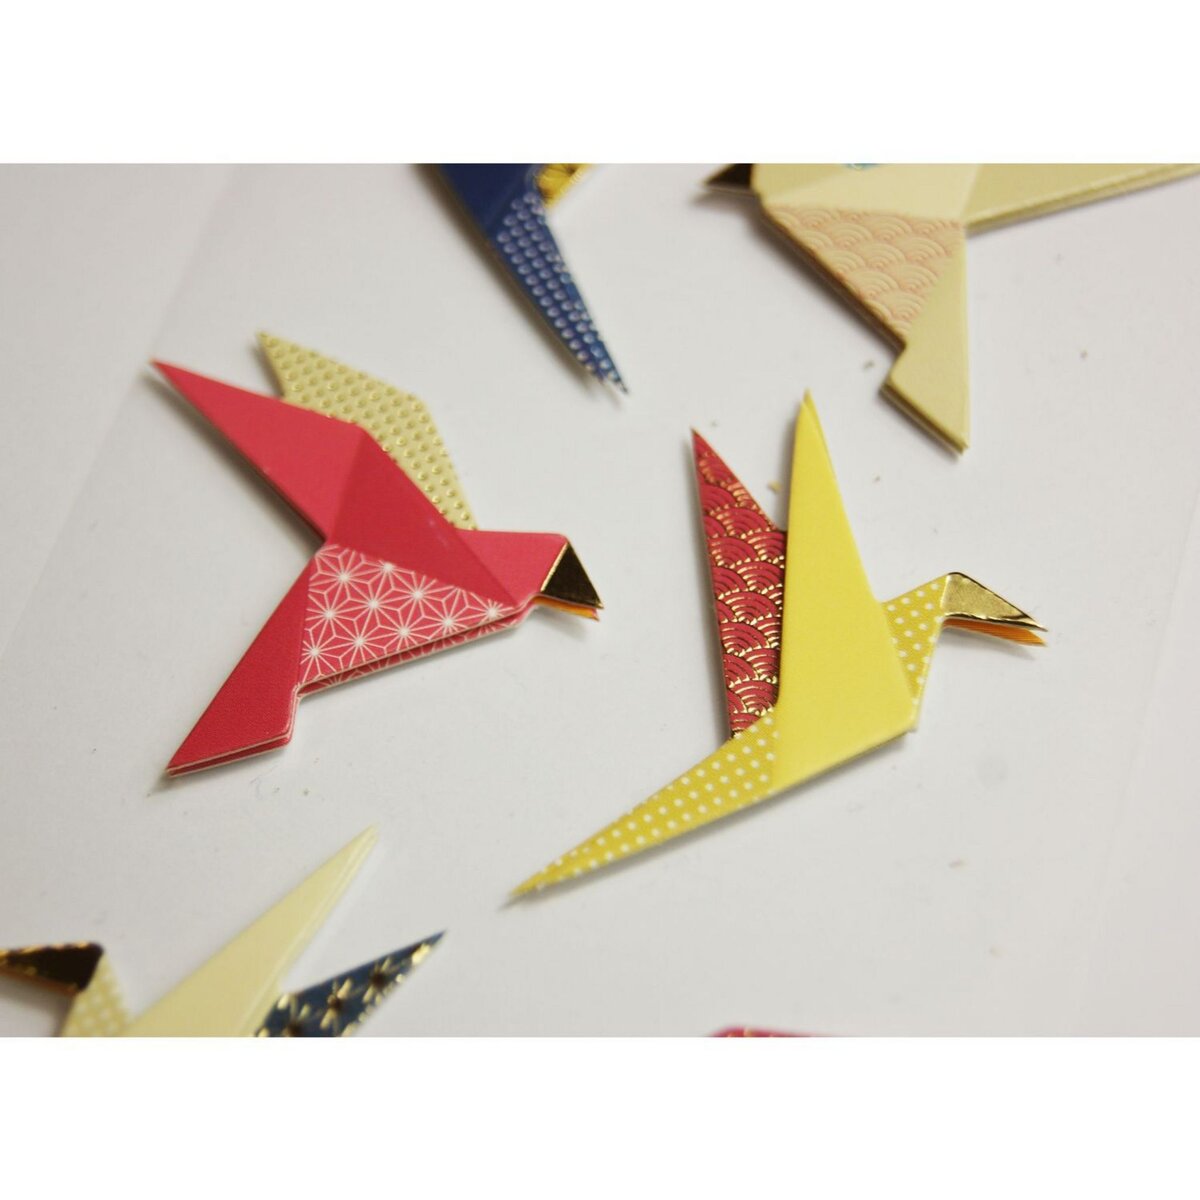  Autocollants en relief à paillettes - Origami oiseaux